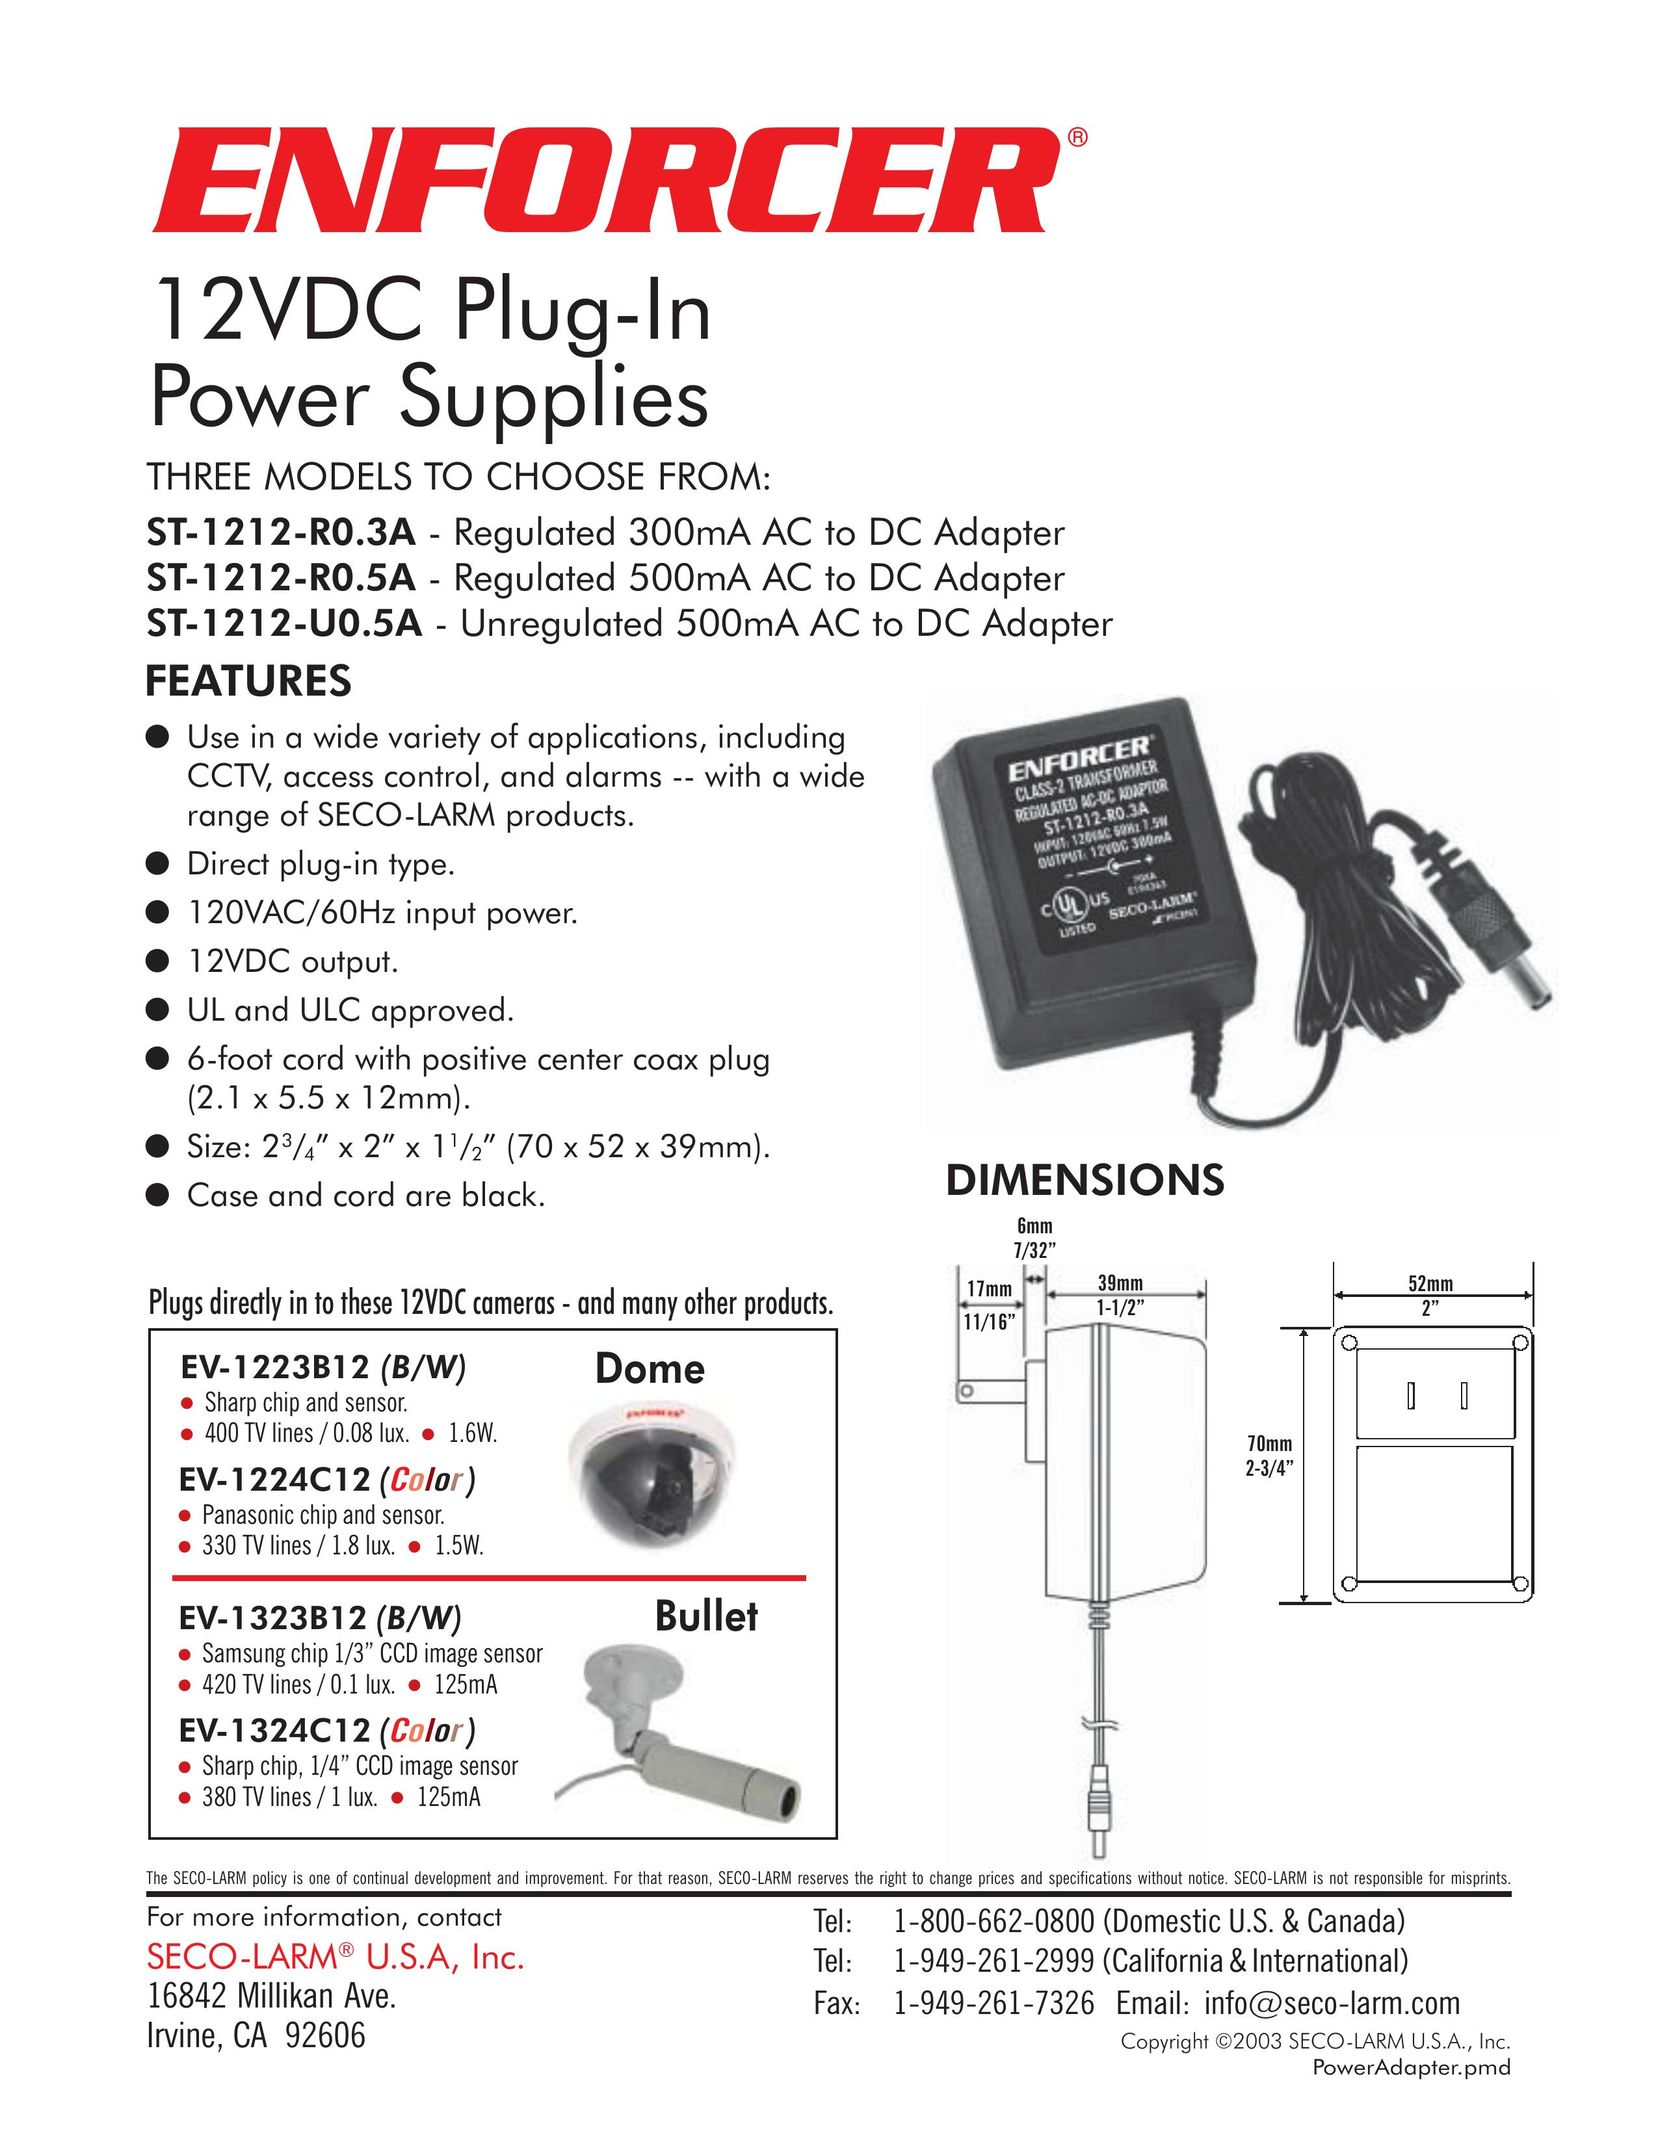 SECO-LARM USA EV-1223B12 Power Supply User Manual